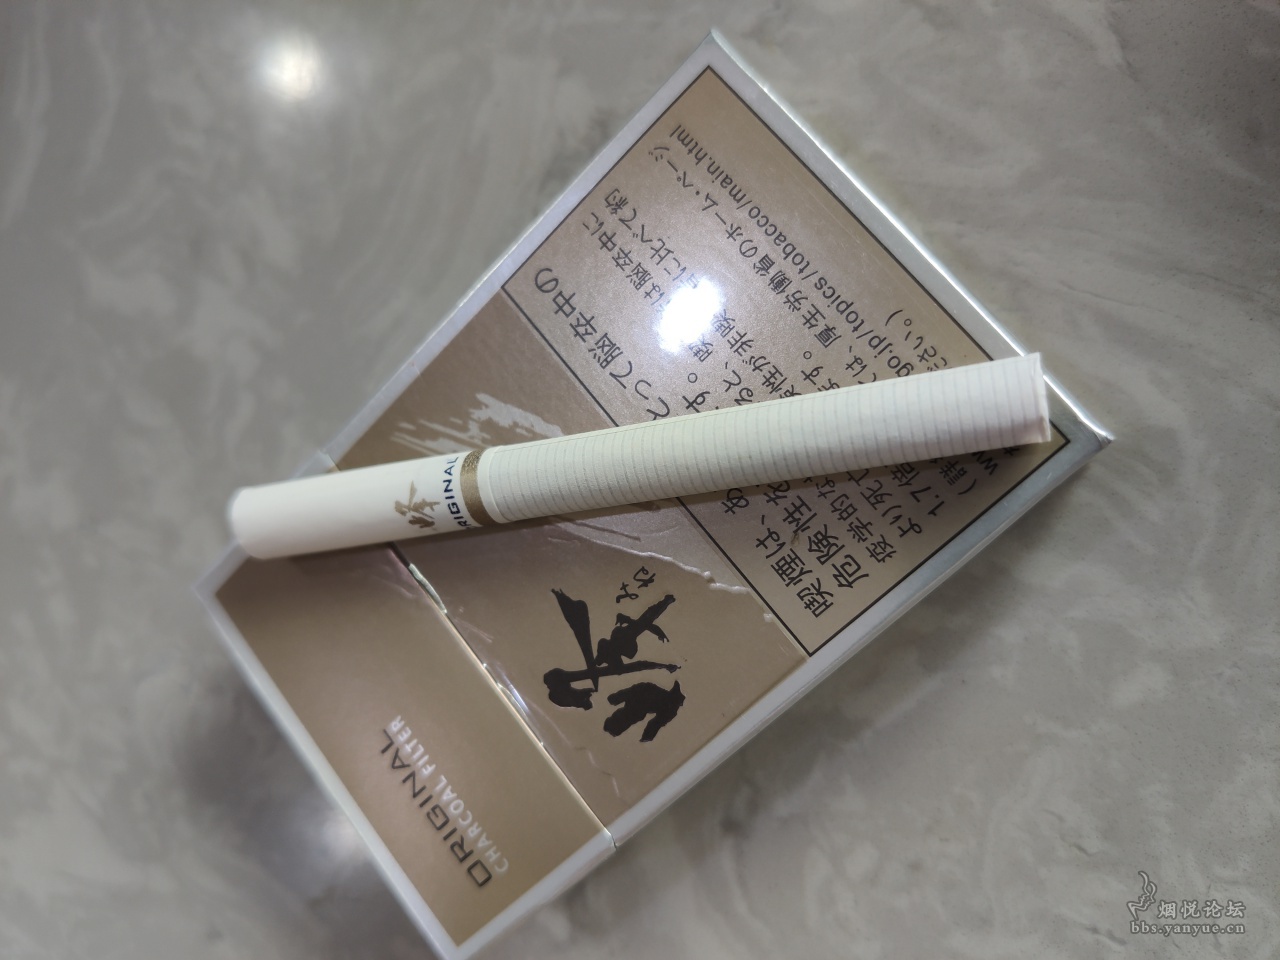 在日本买软壳七星香烟黑色包装的多少钱。_百度知道